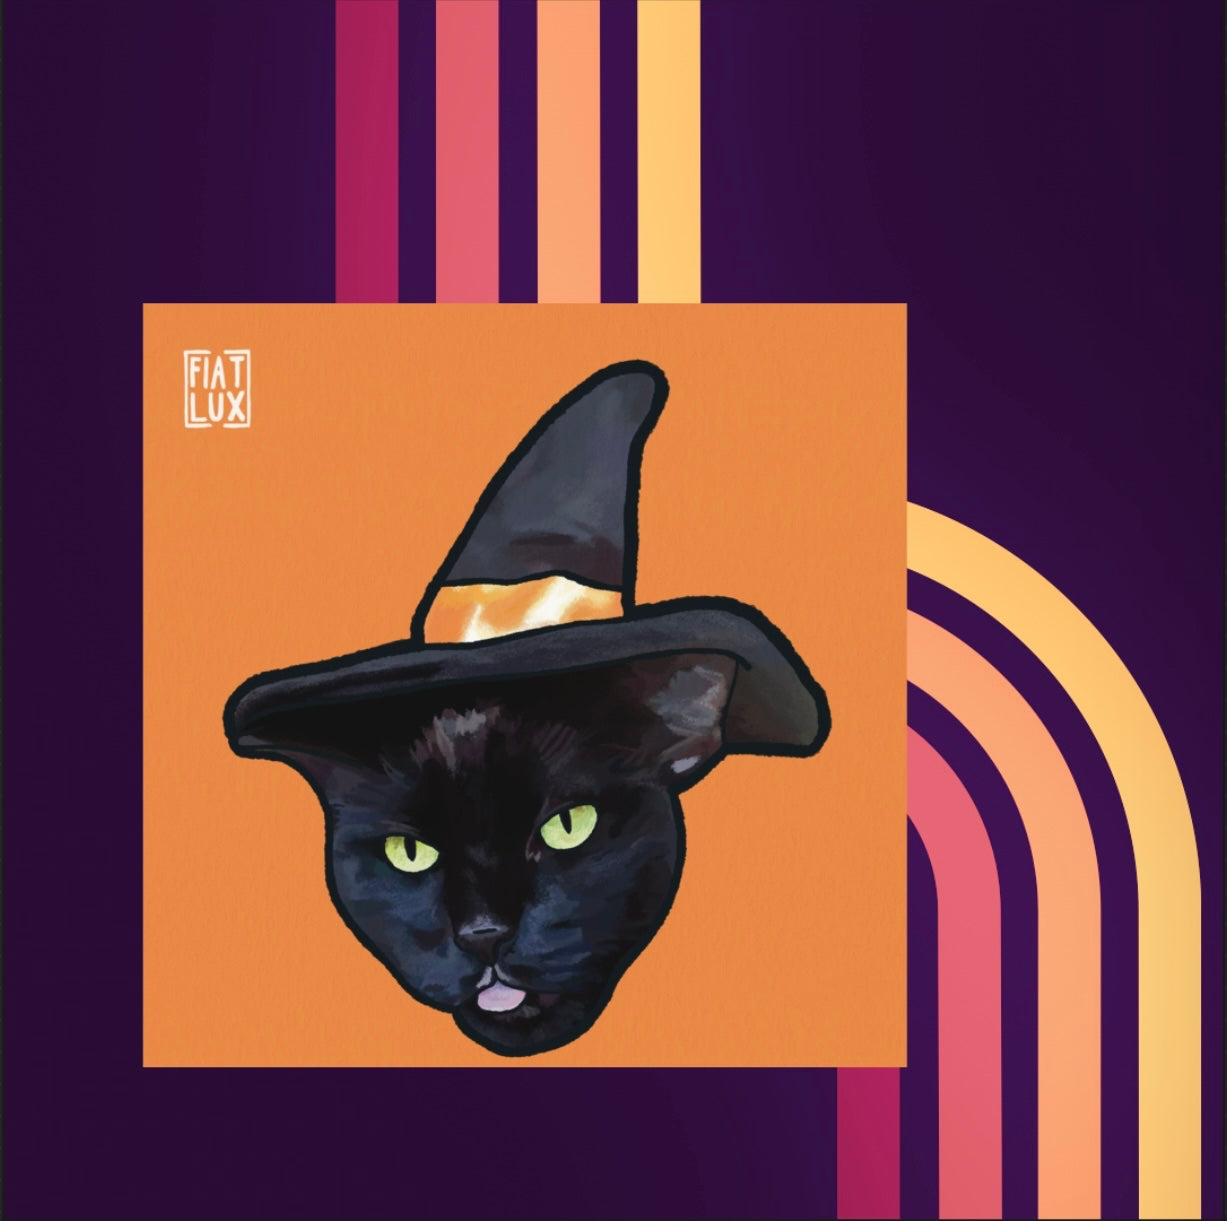 Cat Witch 2 Familiar Illustration Mini Print 4x4 (Copy)